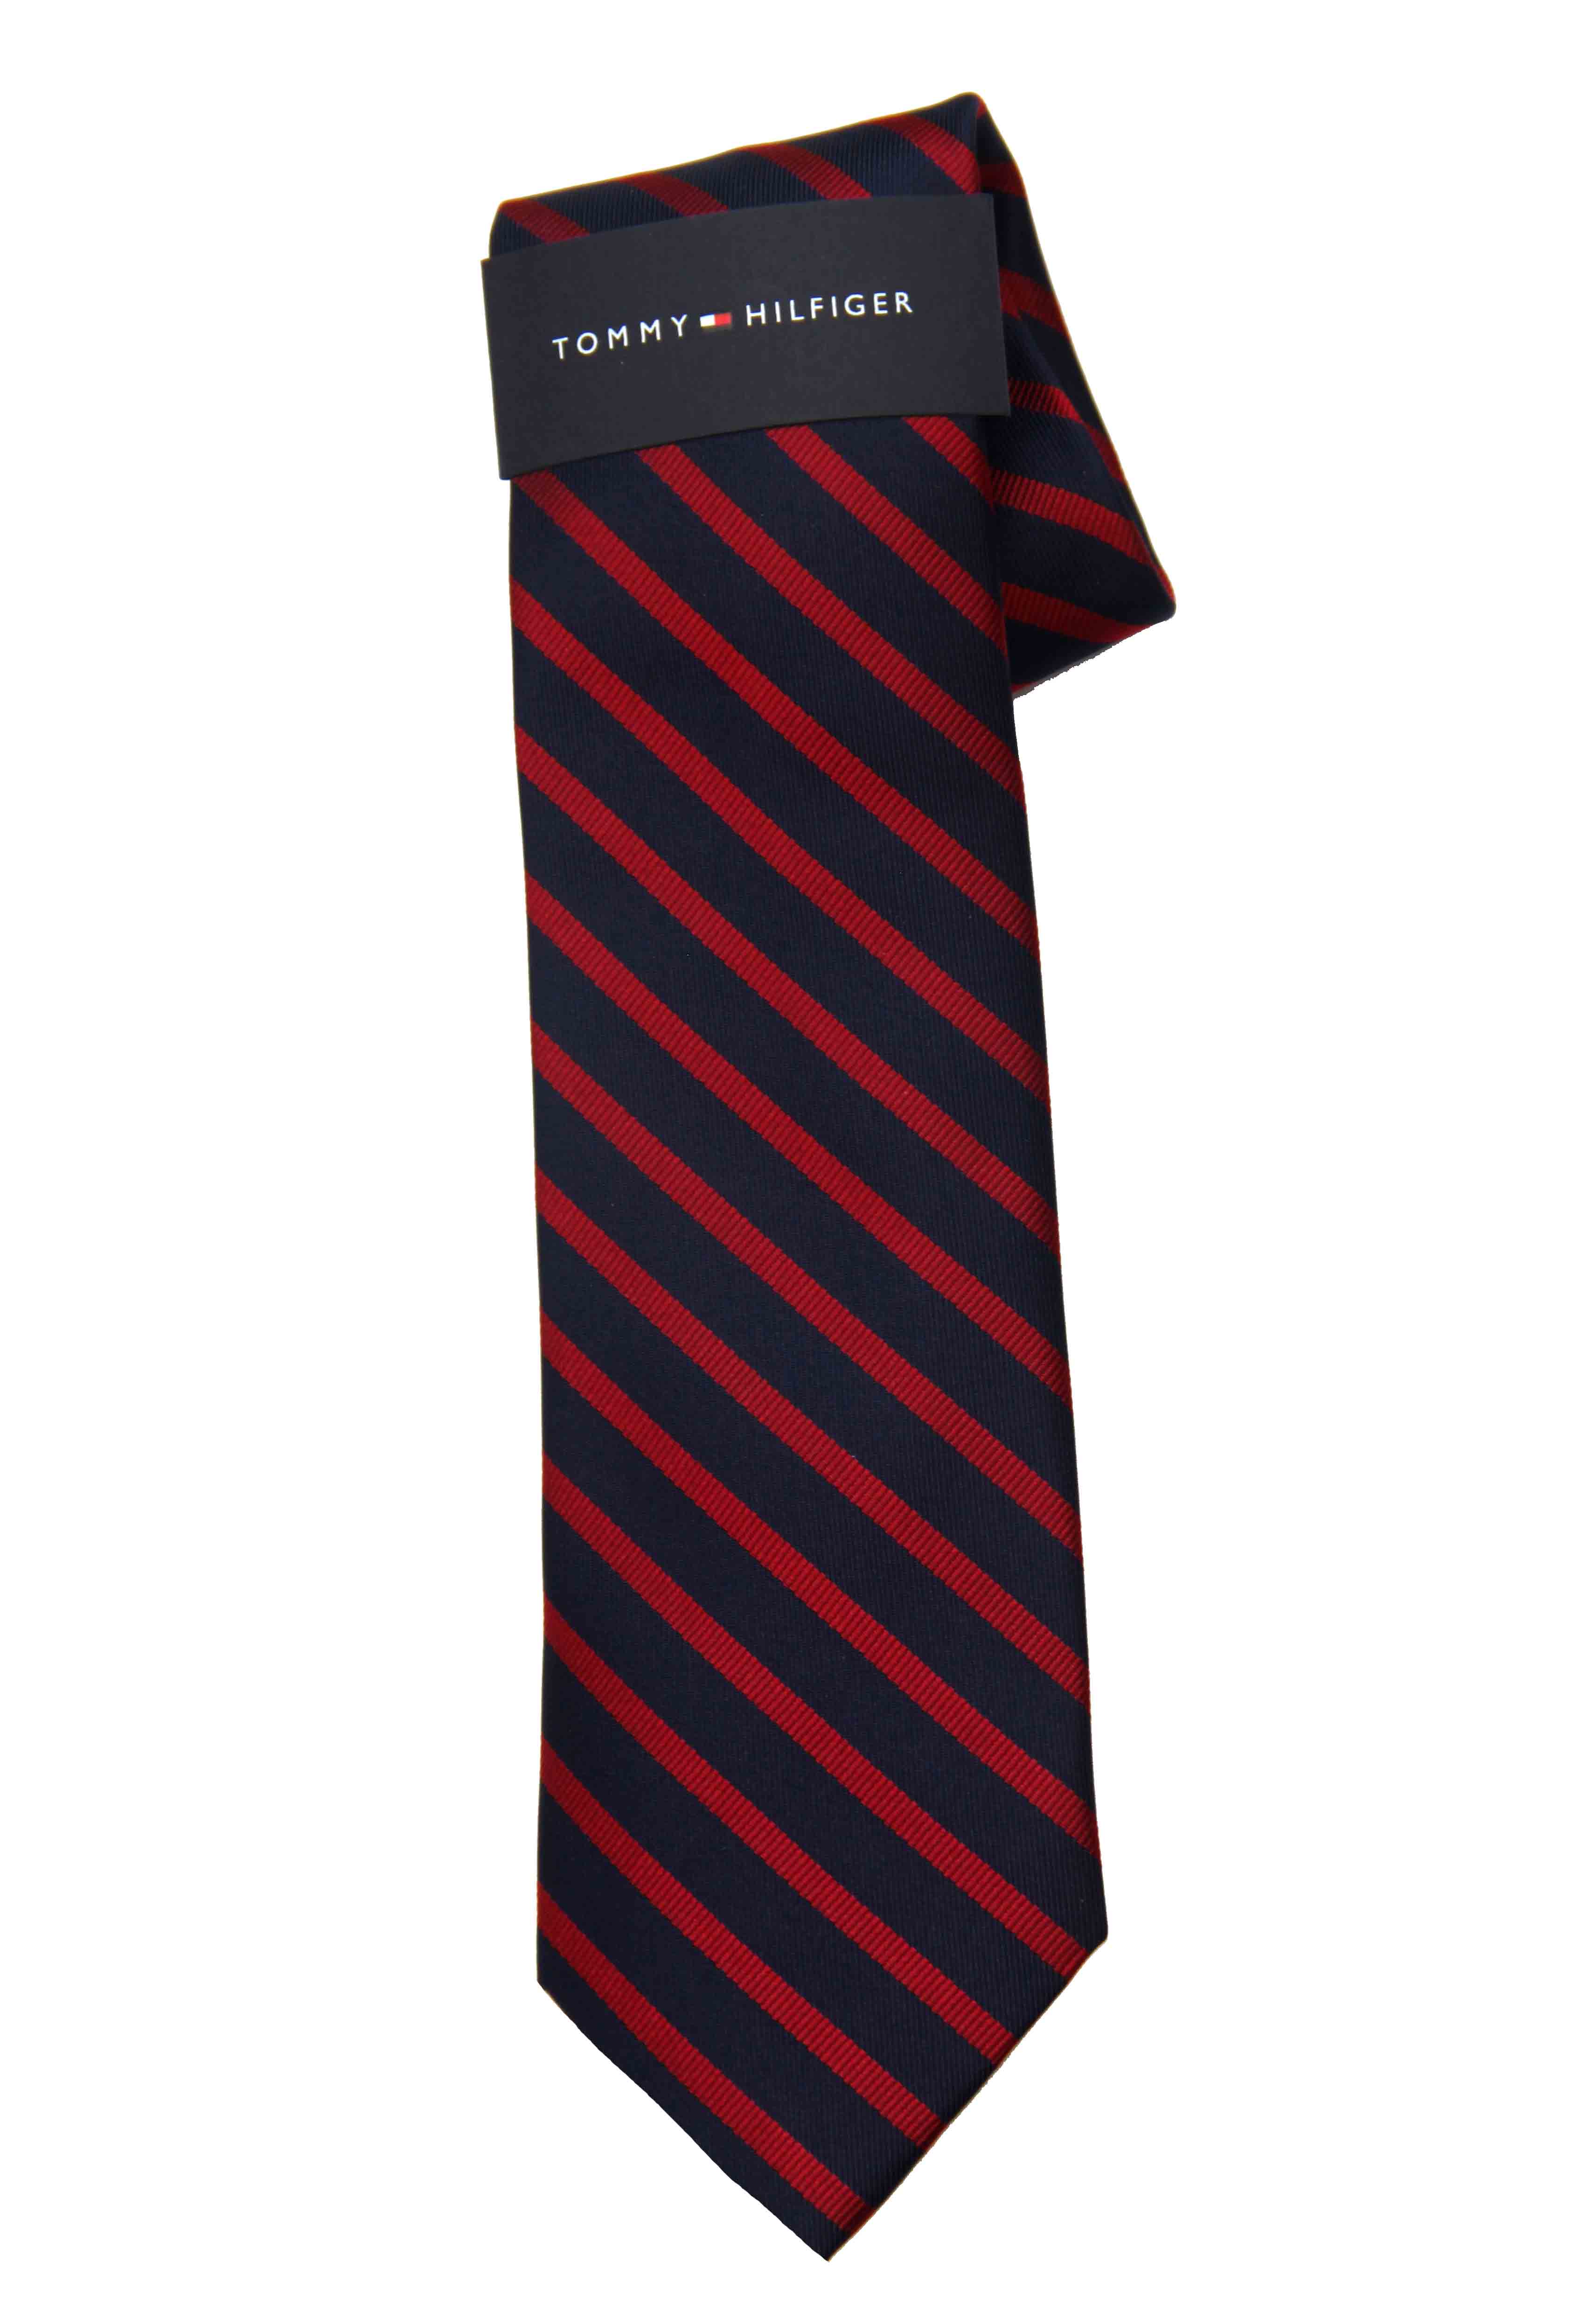 Tommy Hilfiger Repp Stripe Tie Silk Blend Navy Blue Red Men's